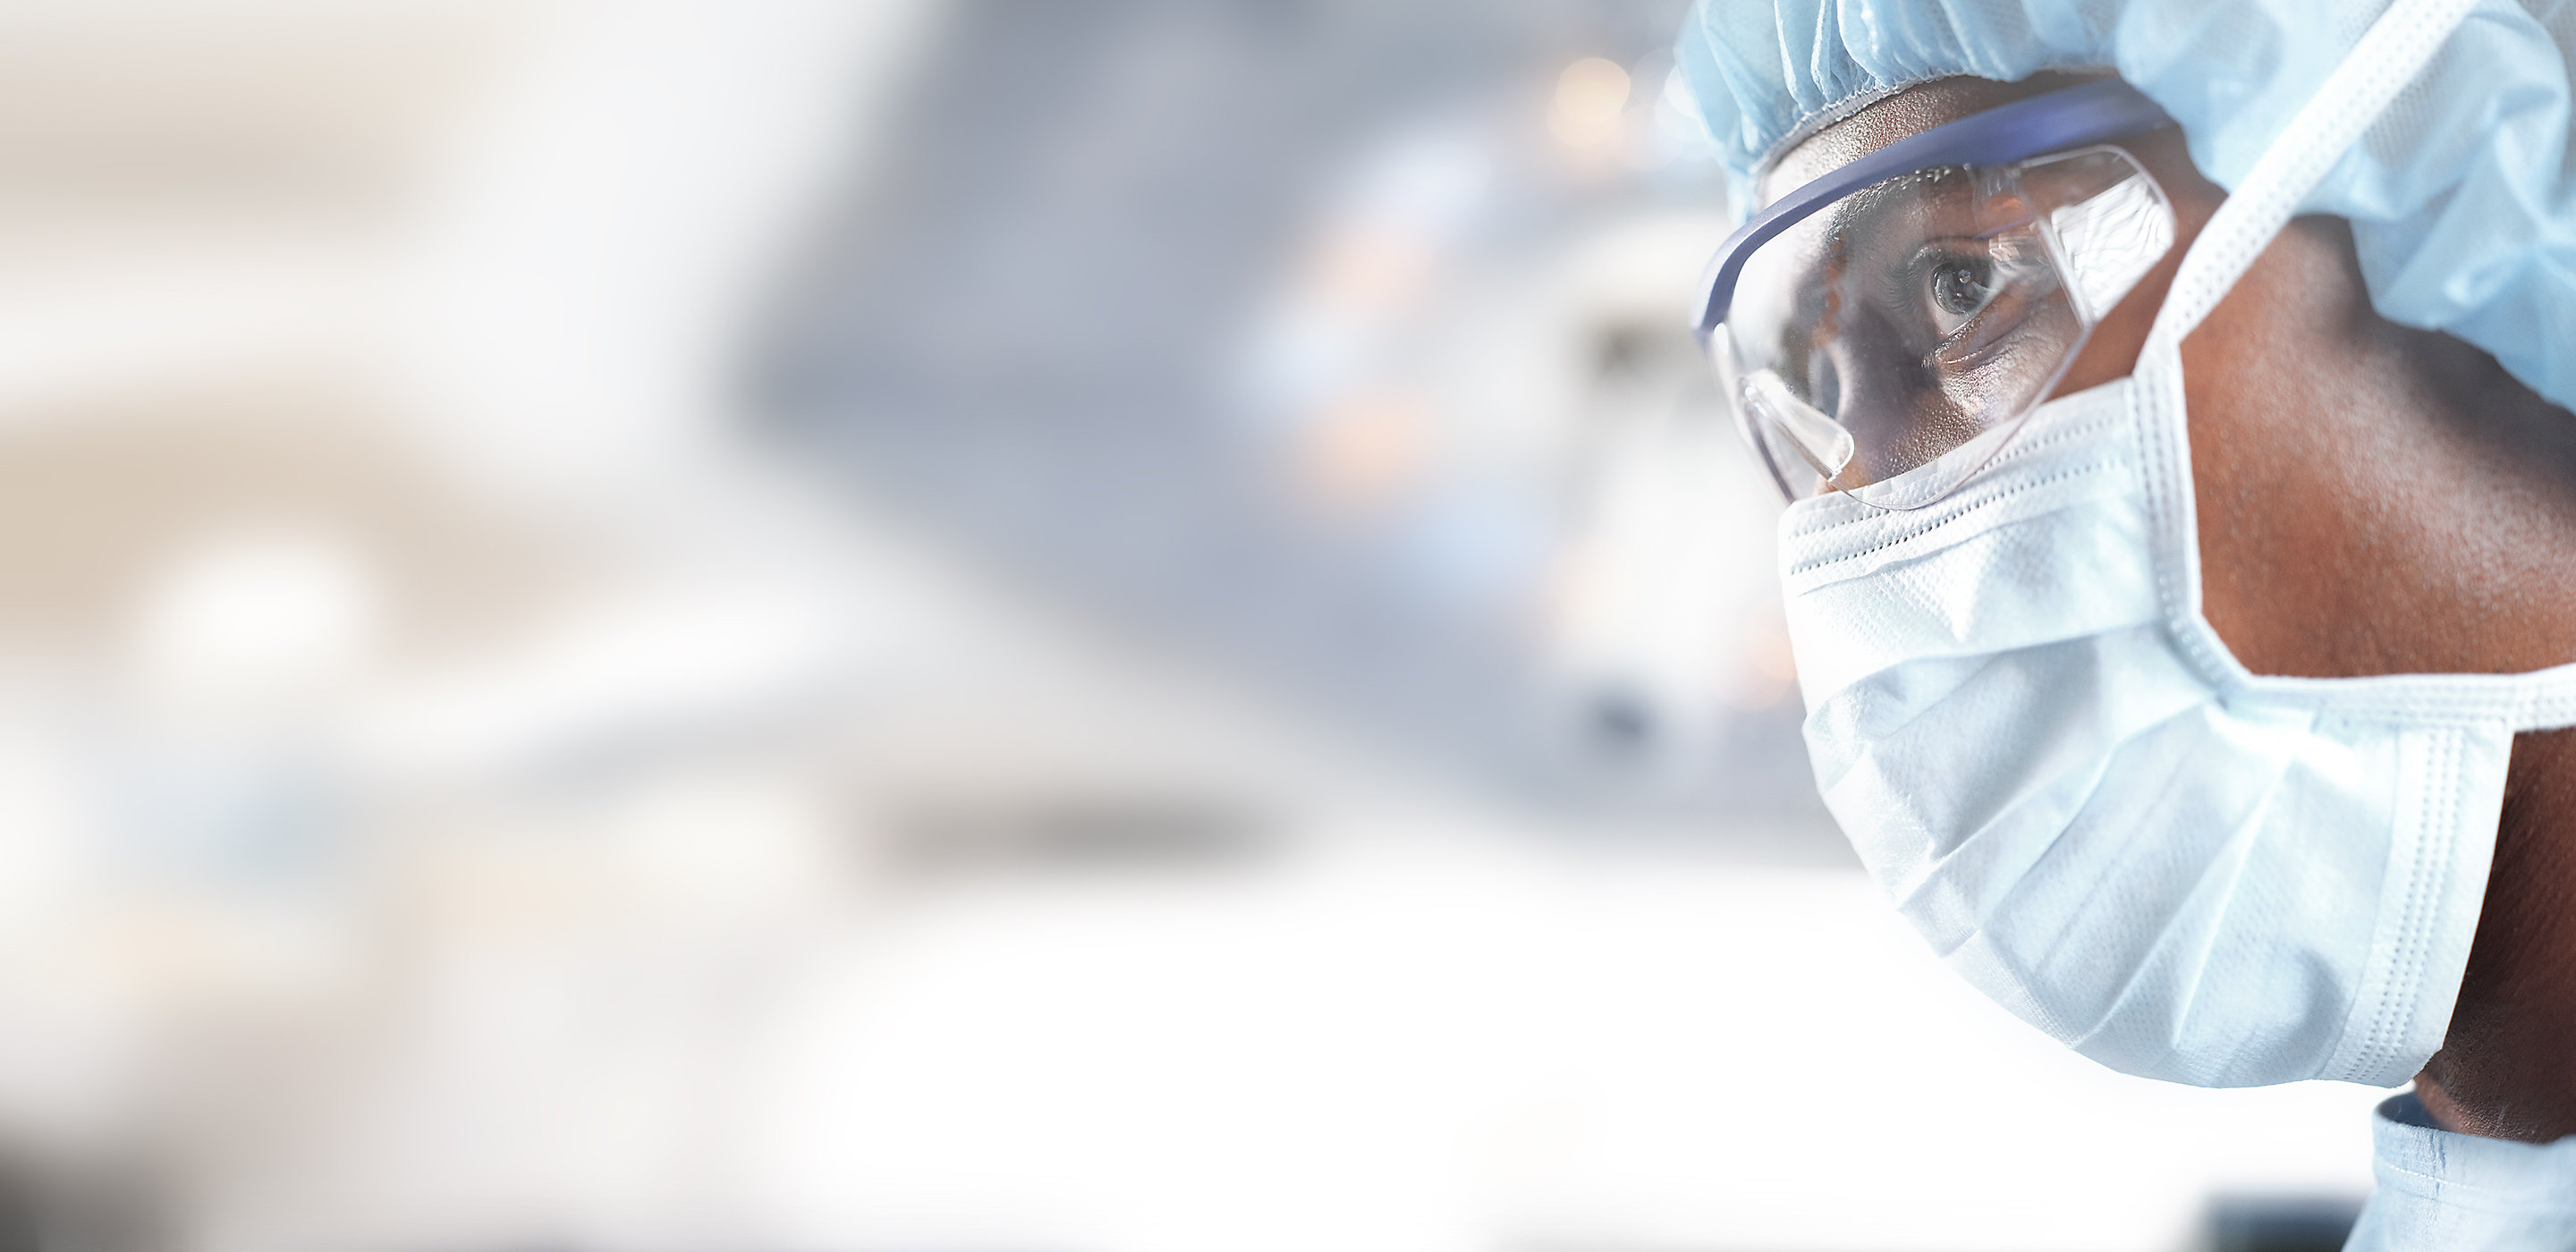 Imagem aproximada de um membro da equipe cirúrgica durante a cirurgia, foco cirúrgico Hillrom em segundo plano.